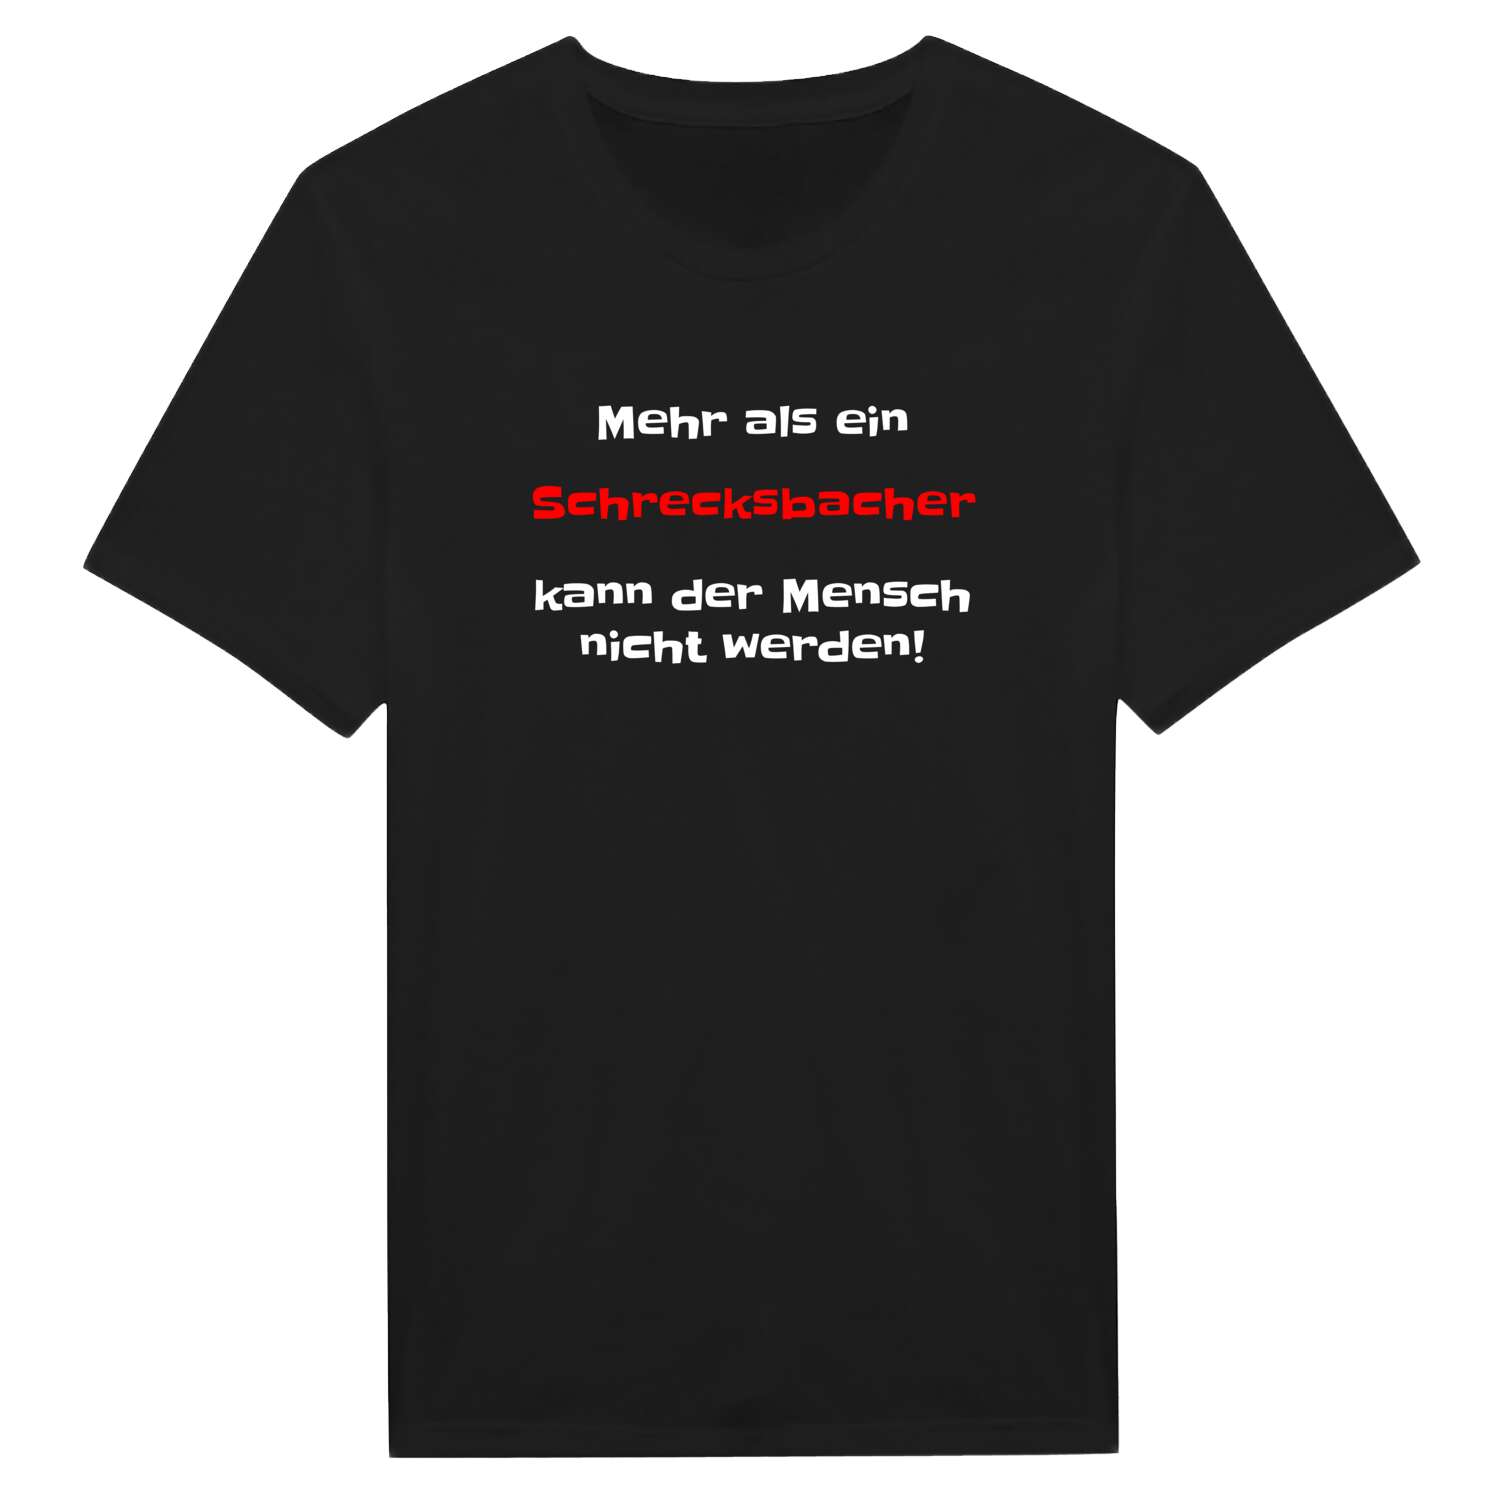 Schrecksbach T-Shirt »Mehr als ein«